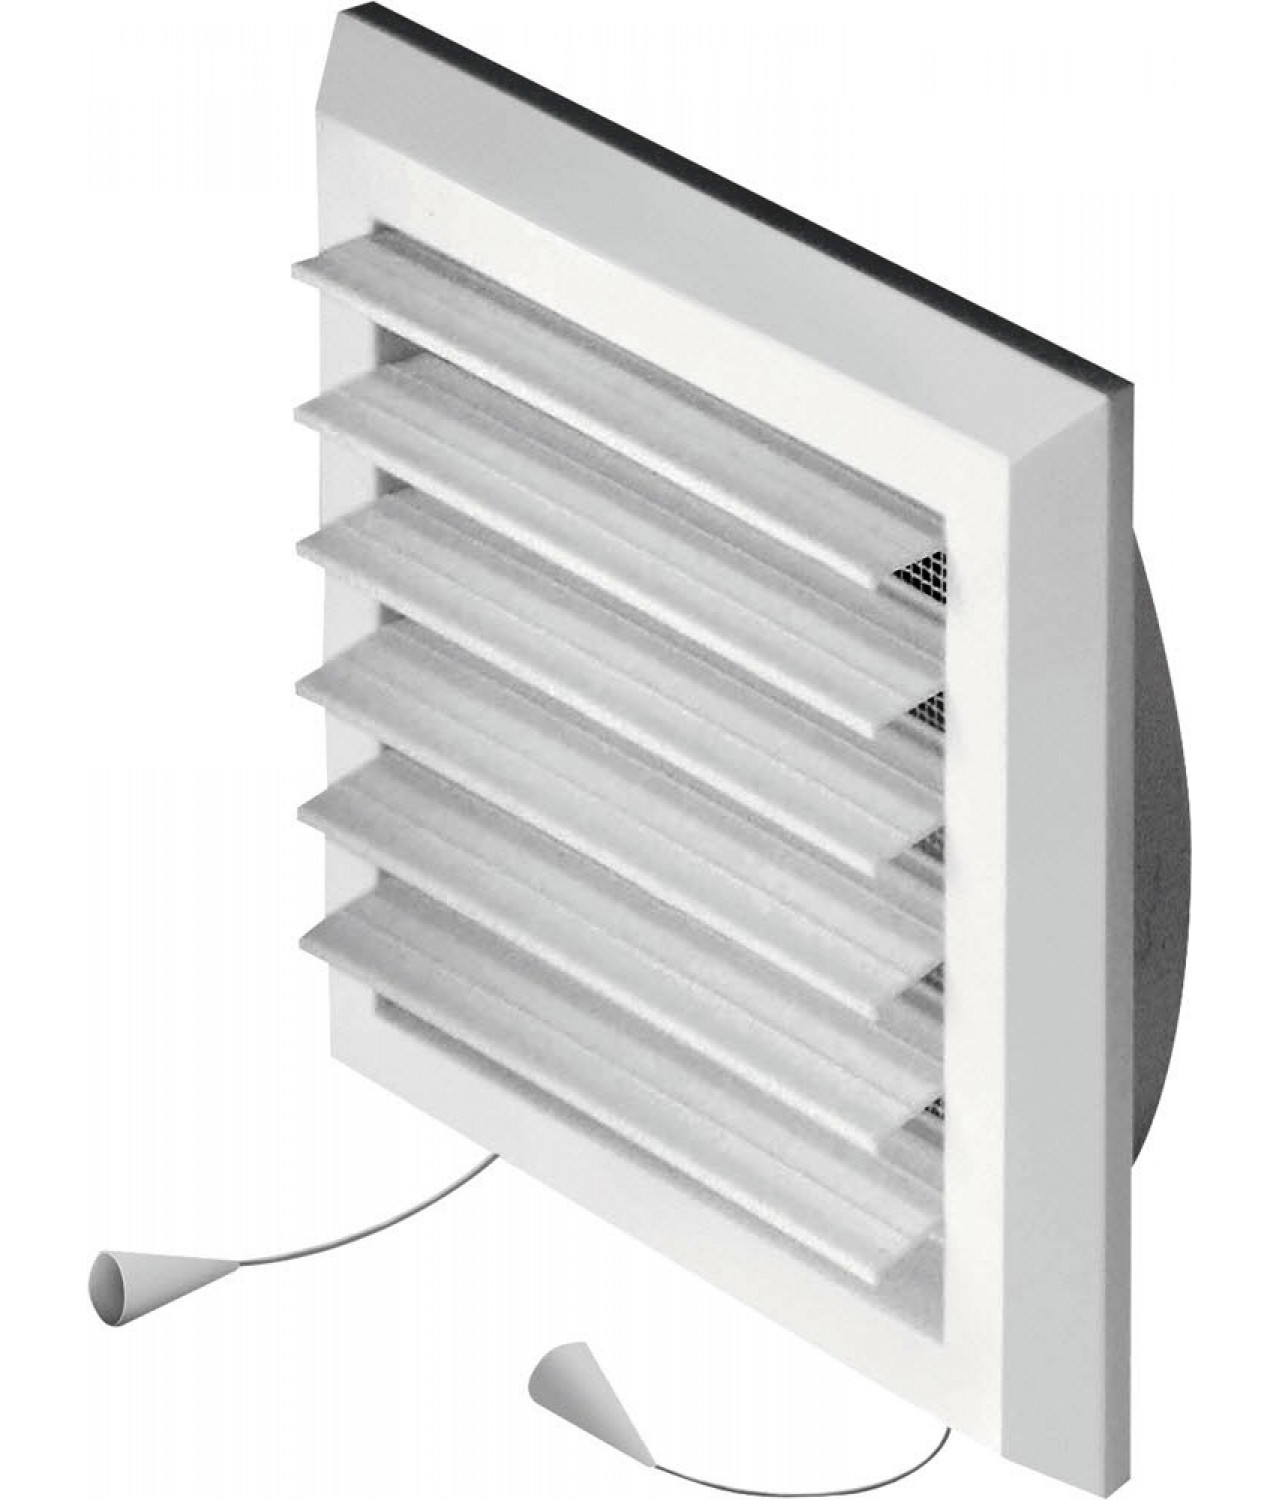 Вентиляционная решетка с заслонкой GRT78, 175x175 мм, Ø125 мм